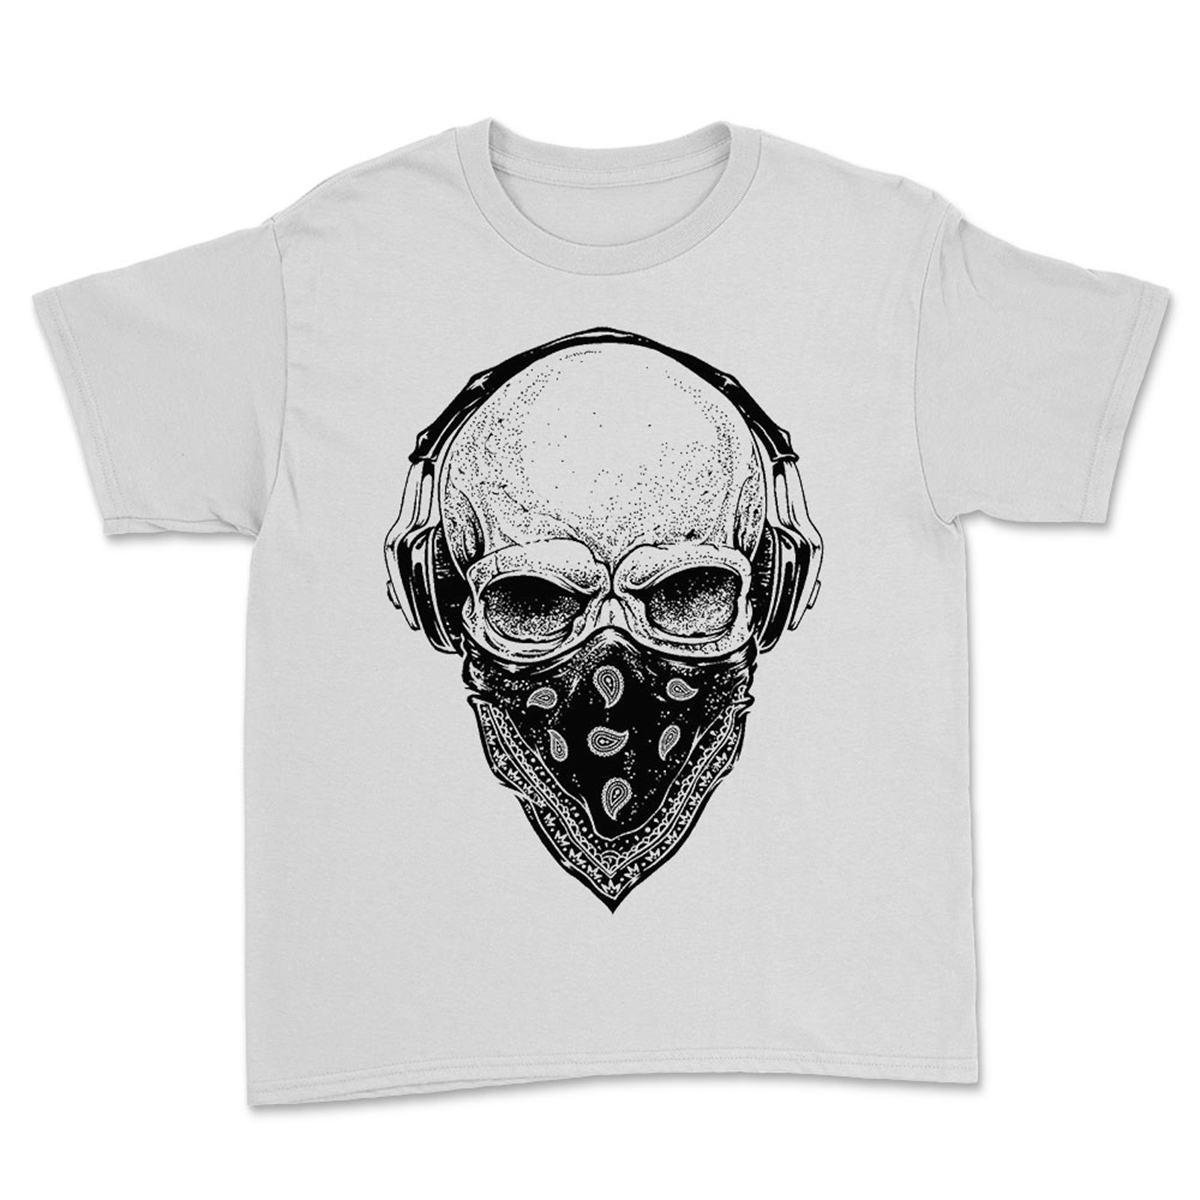 Kuru Kafa Baskılı Tasarım Unisex Tişört - Kuru Kafa T-Shirt